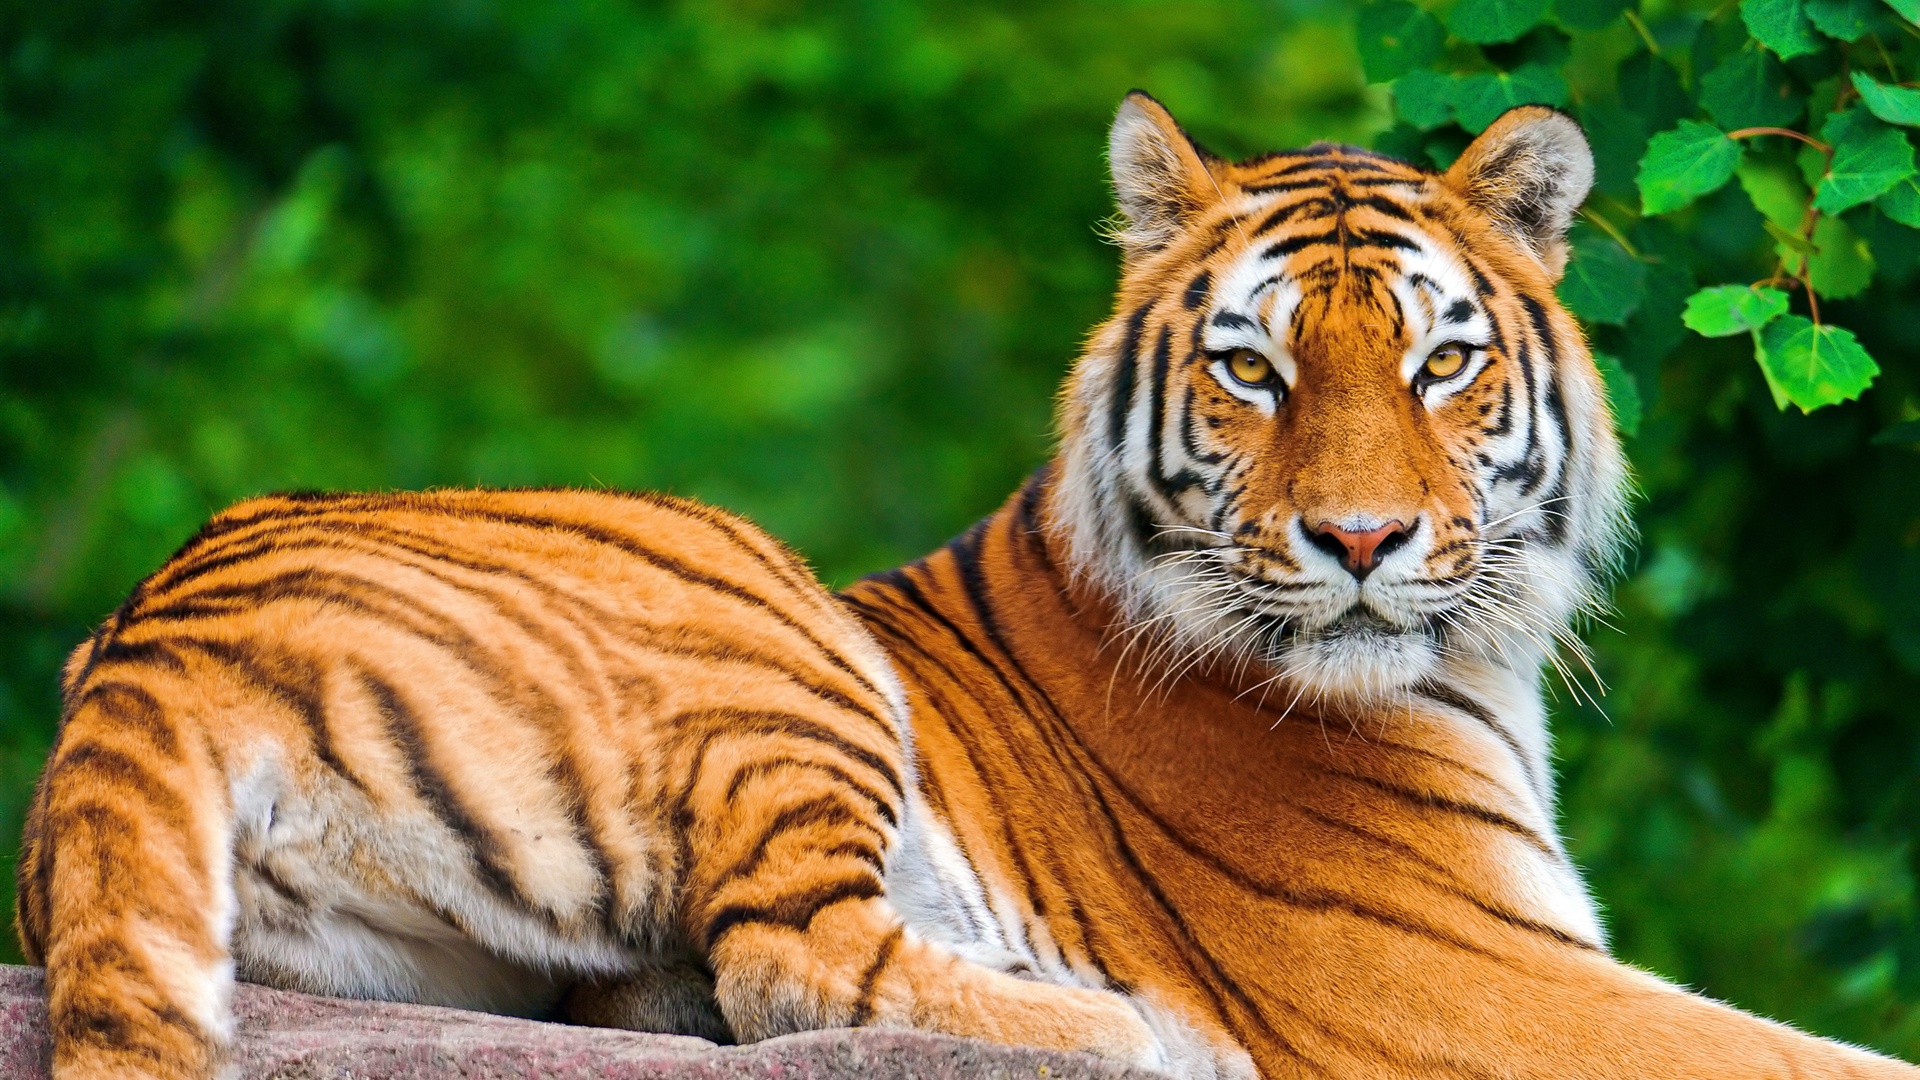 Tiger Desktop Background